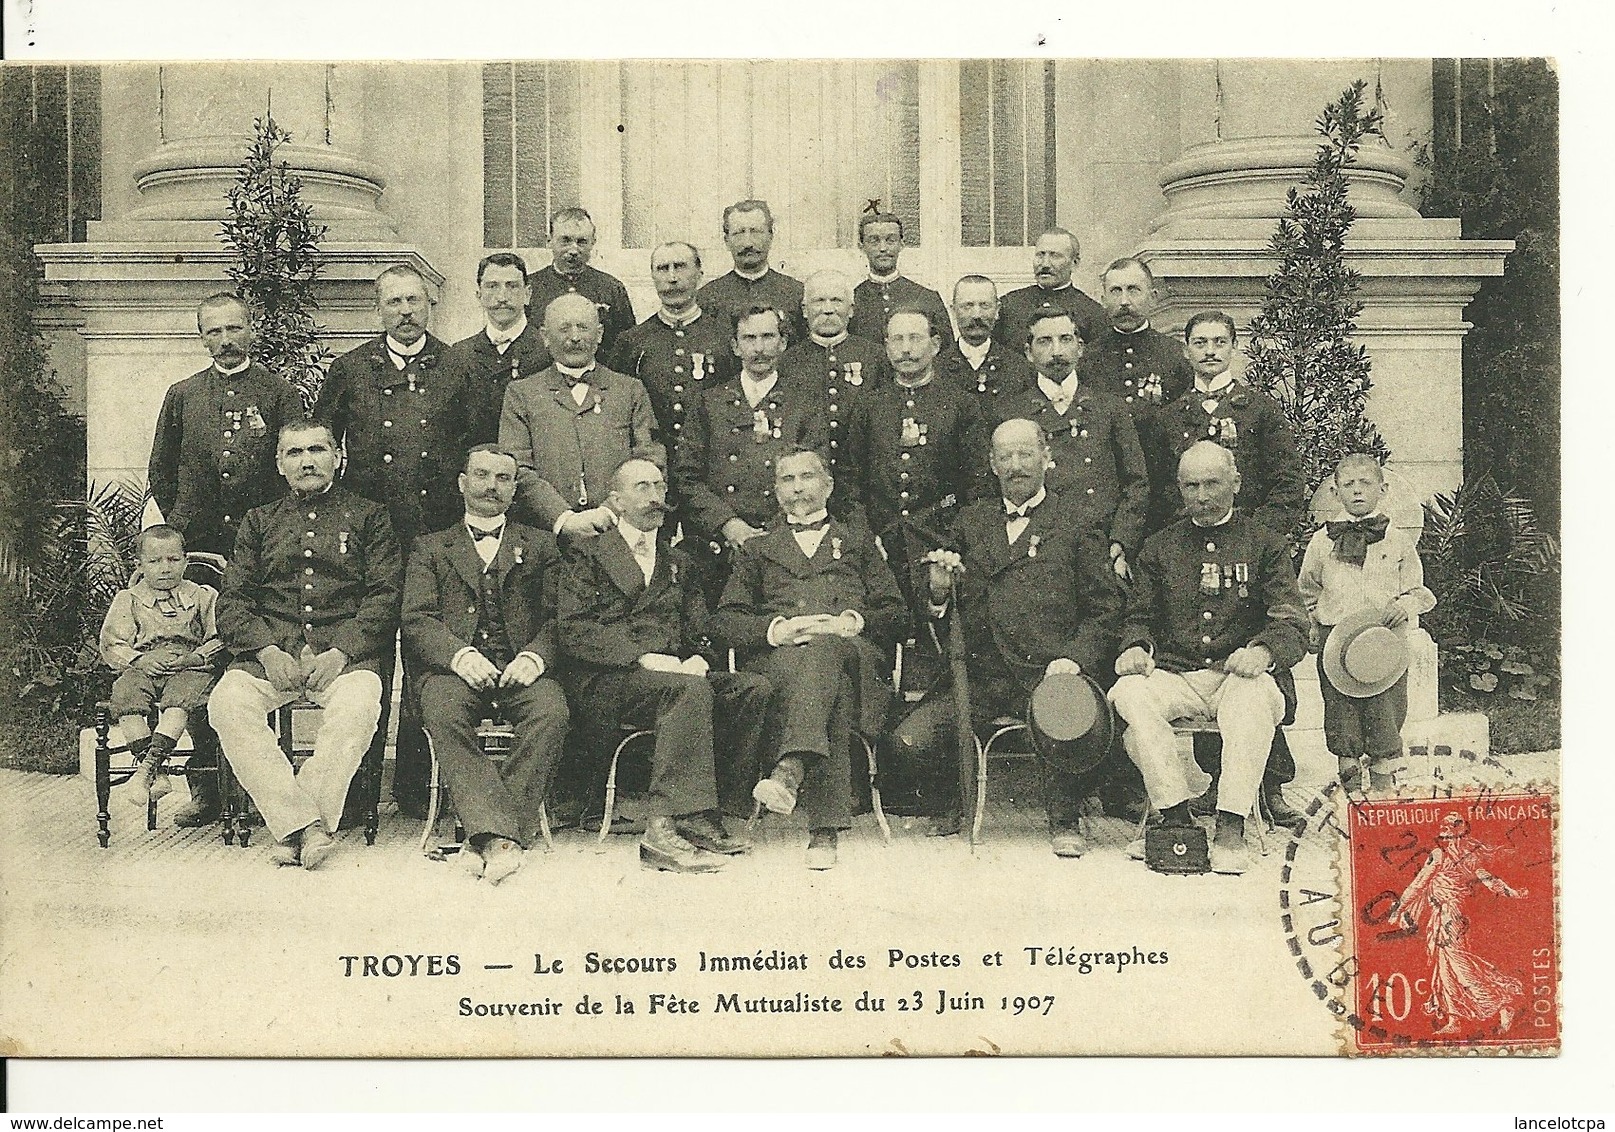 10 - TROYES / LE SECOURS IMMEDIAT DES POSTES ET TELEGRAPHES - SOUVENIR DE LA FETE MUTUALISTE Du 23 JUIN 1907 - Troyes